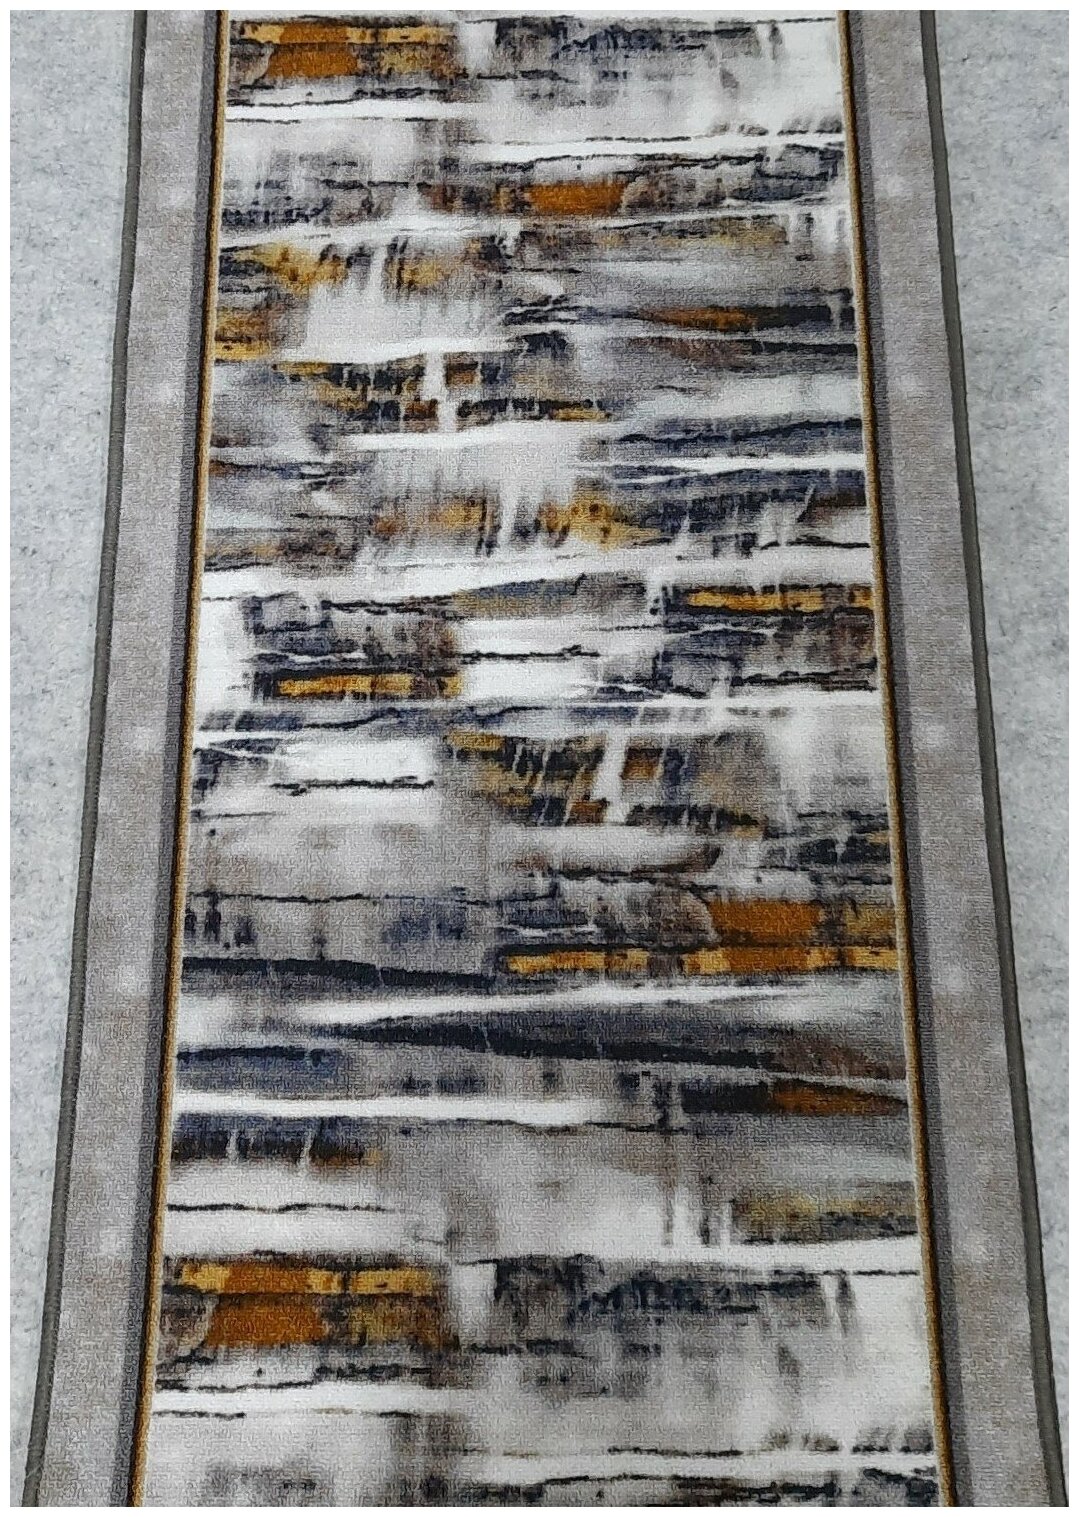 Ковровая дорожка на войлоке, Витебские ковры, с печатным рисунком, 2603/a2r/91, 0,9×1.5 м